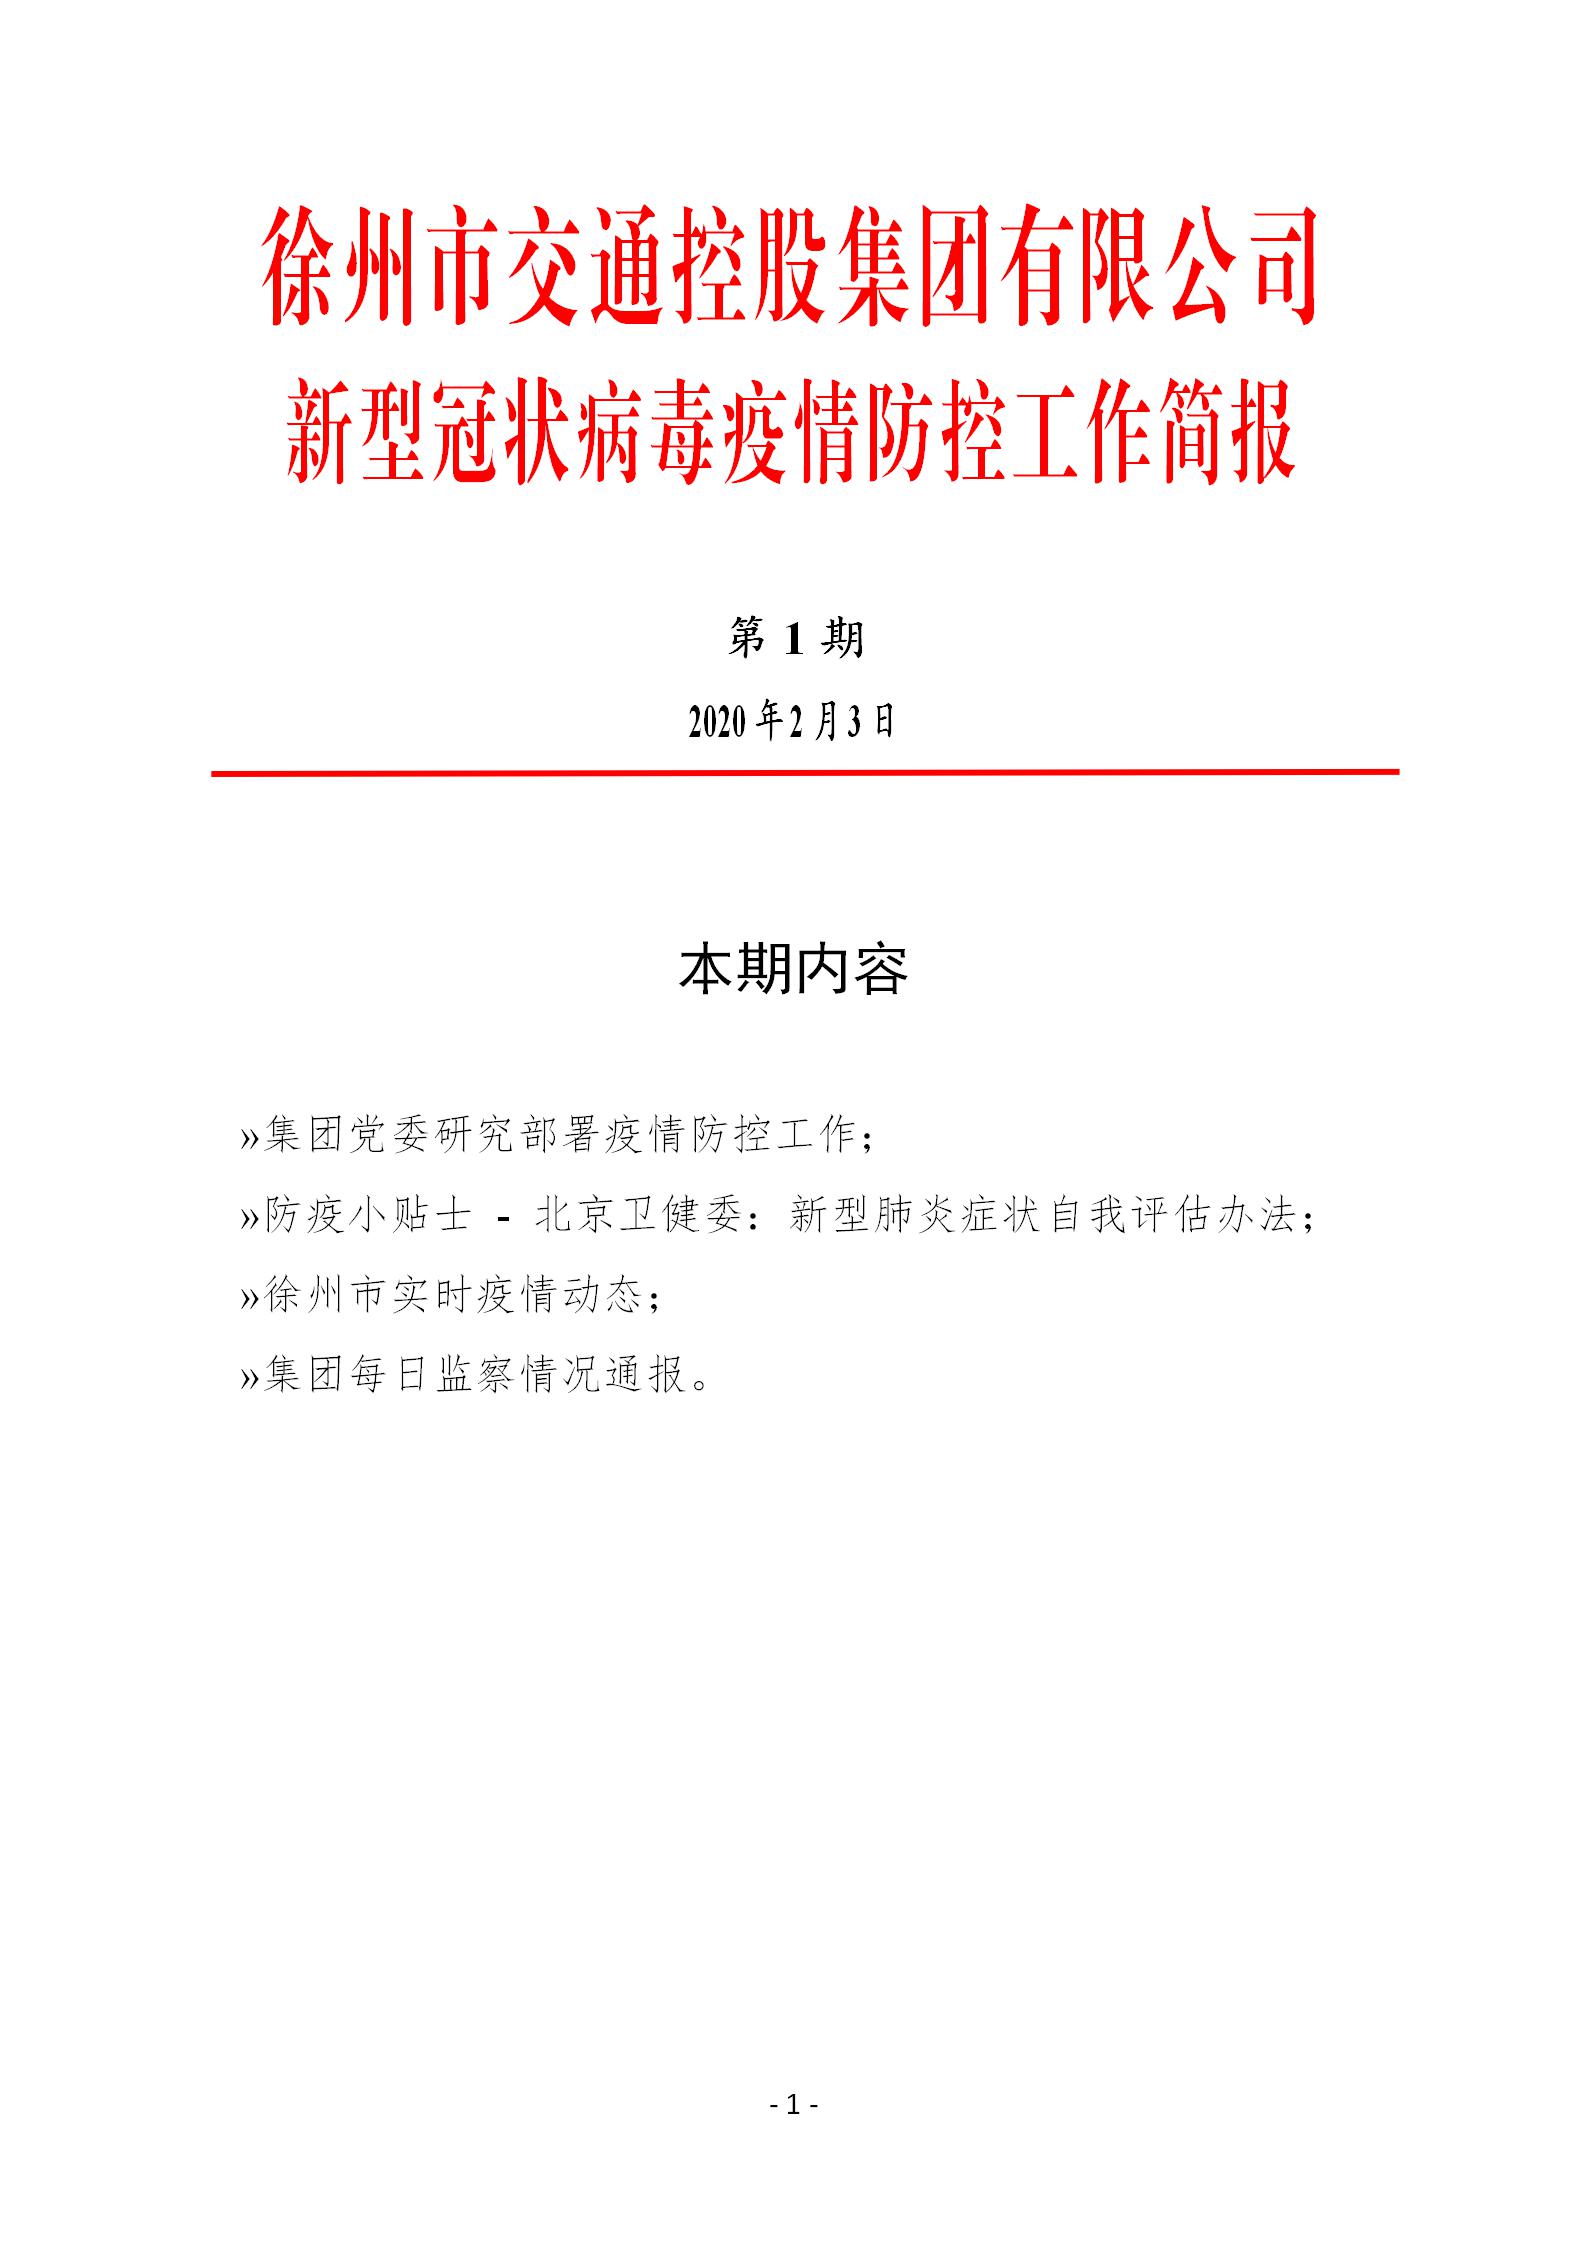 （第一期2.3）徐州市交通控股集团新型冠状病毒防疫防控工作简报